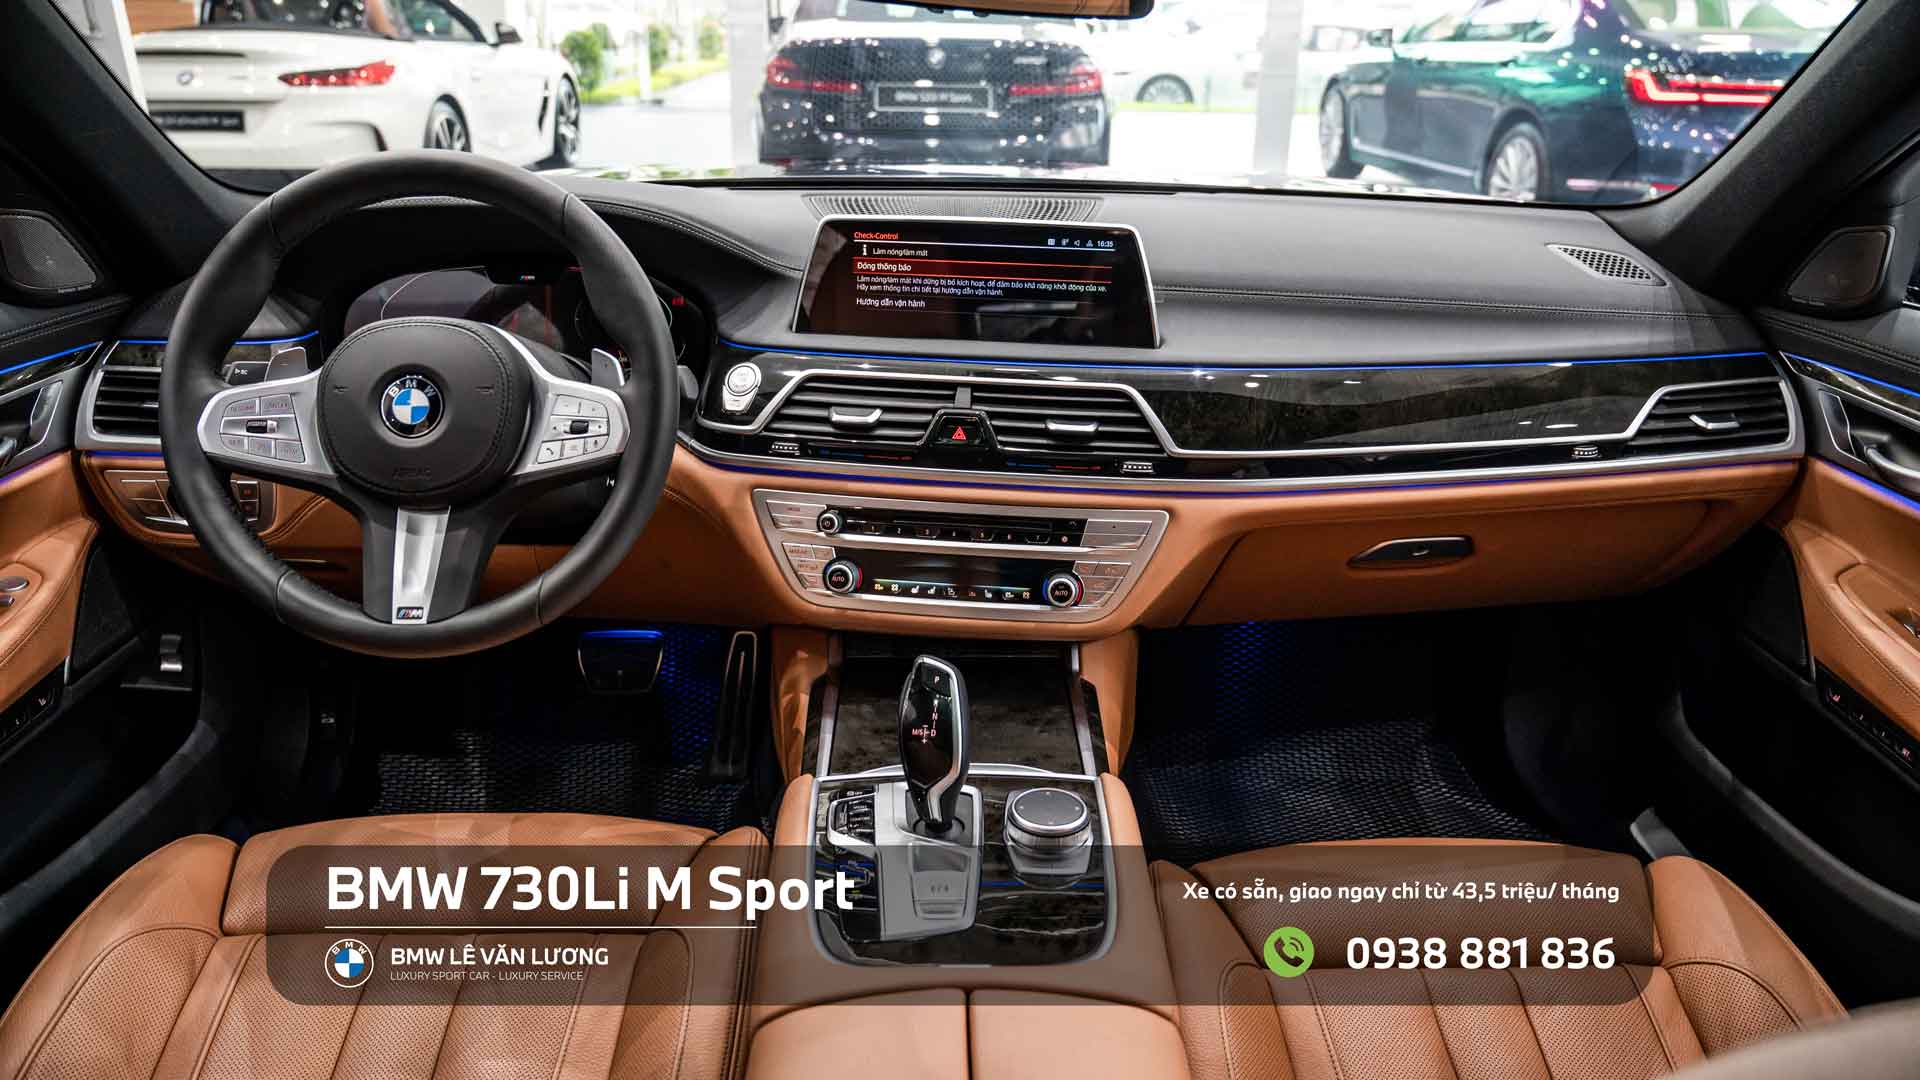 Nội thất BMW 730Li M Sport